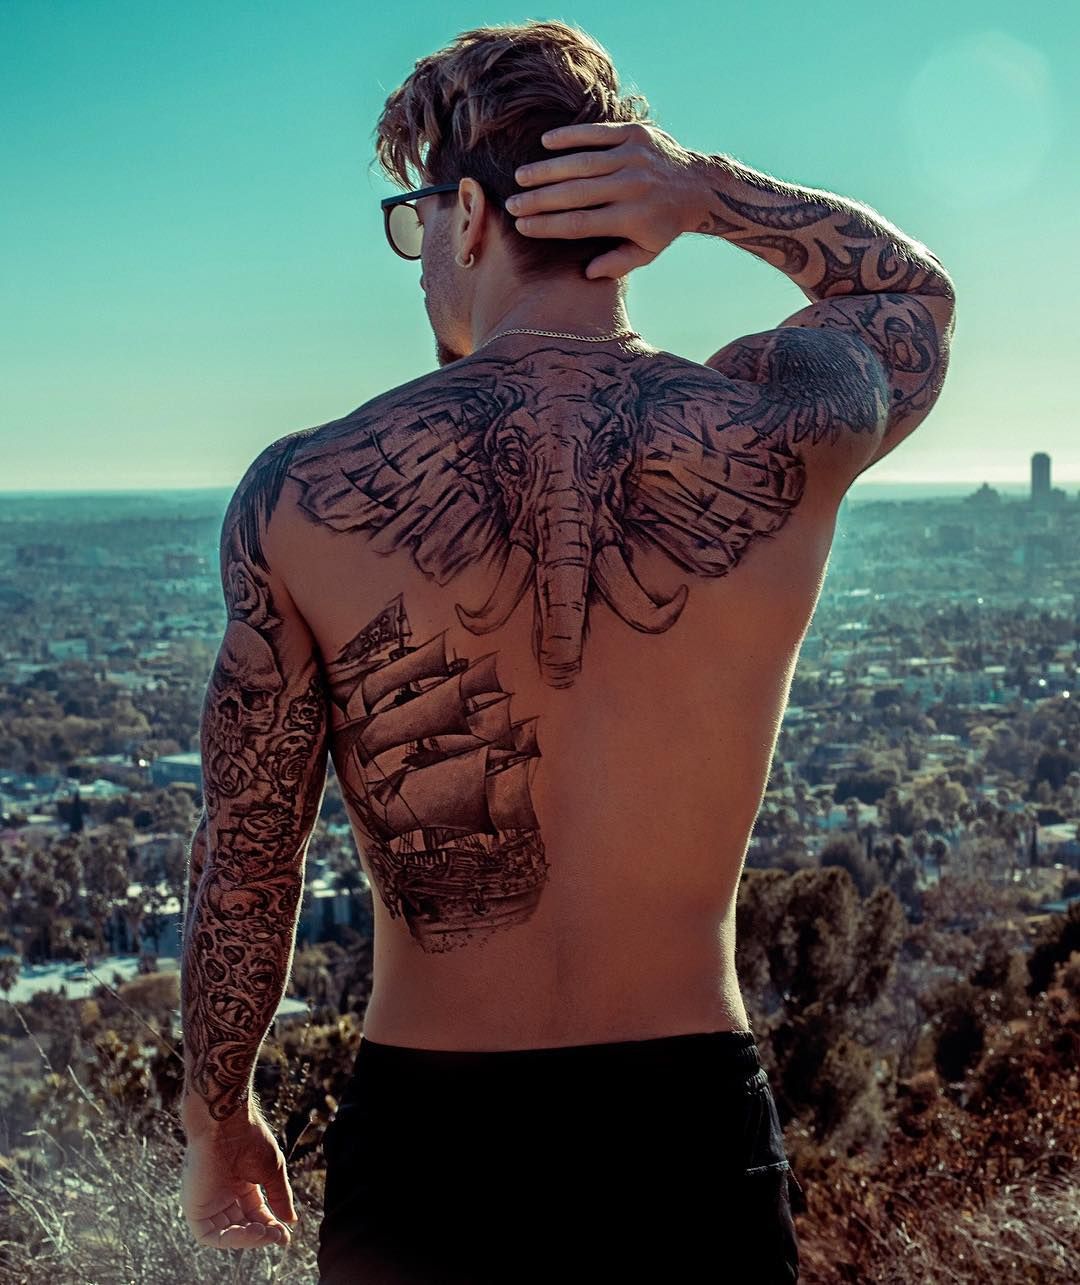 Tatuajes grandes: estas son las tendencias vía Instagram para cubrir tu cuerpo